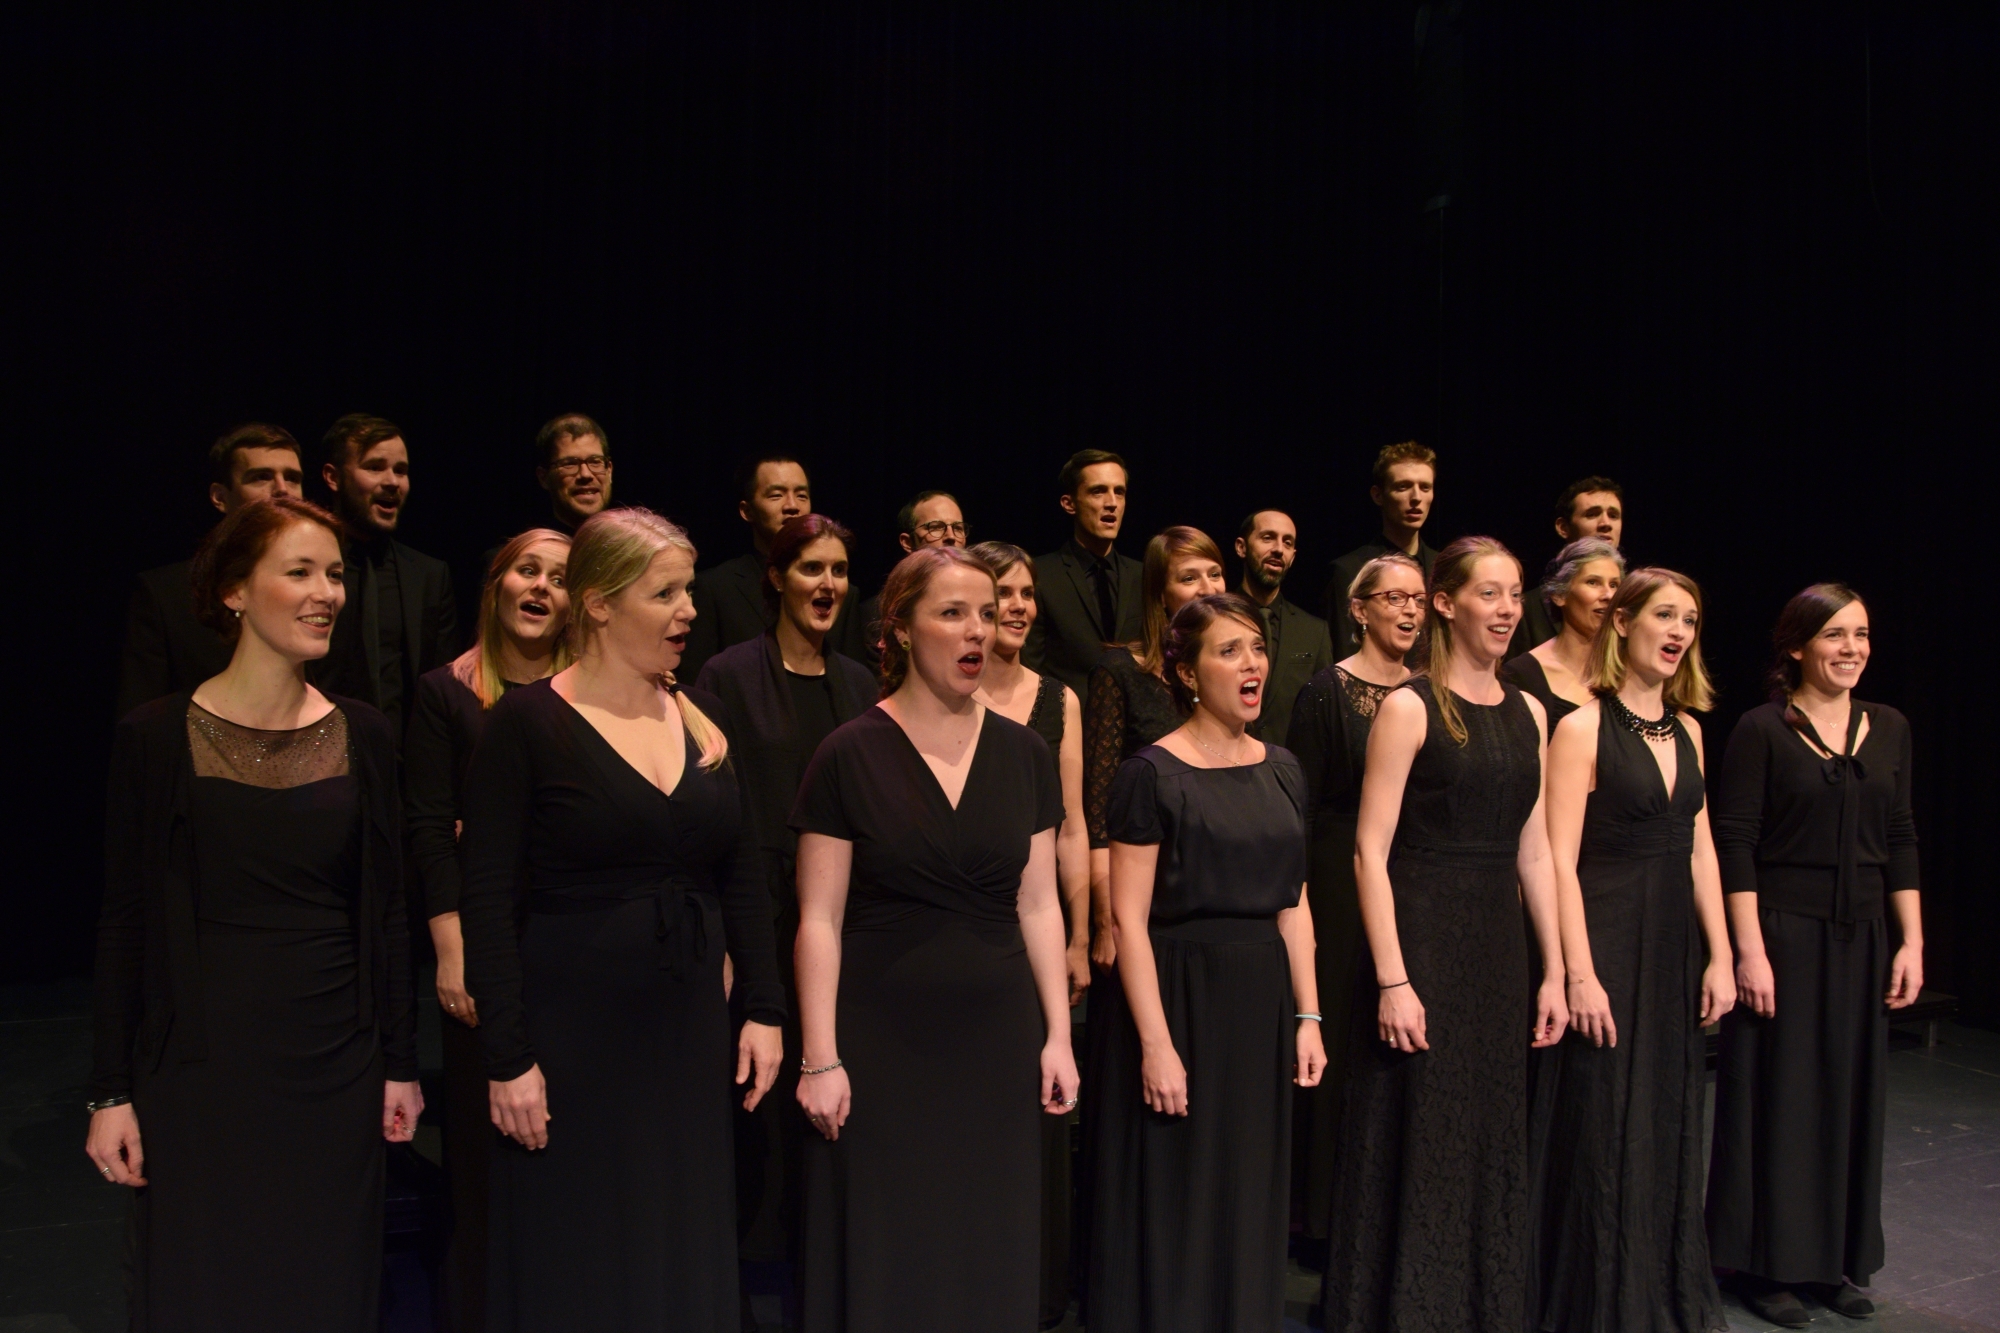 Le choeur Voix de Lausanne chantera pour les pièces composées par Jérôme Berney, co-compositeur de la Fête des vignerons.